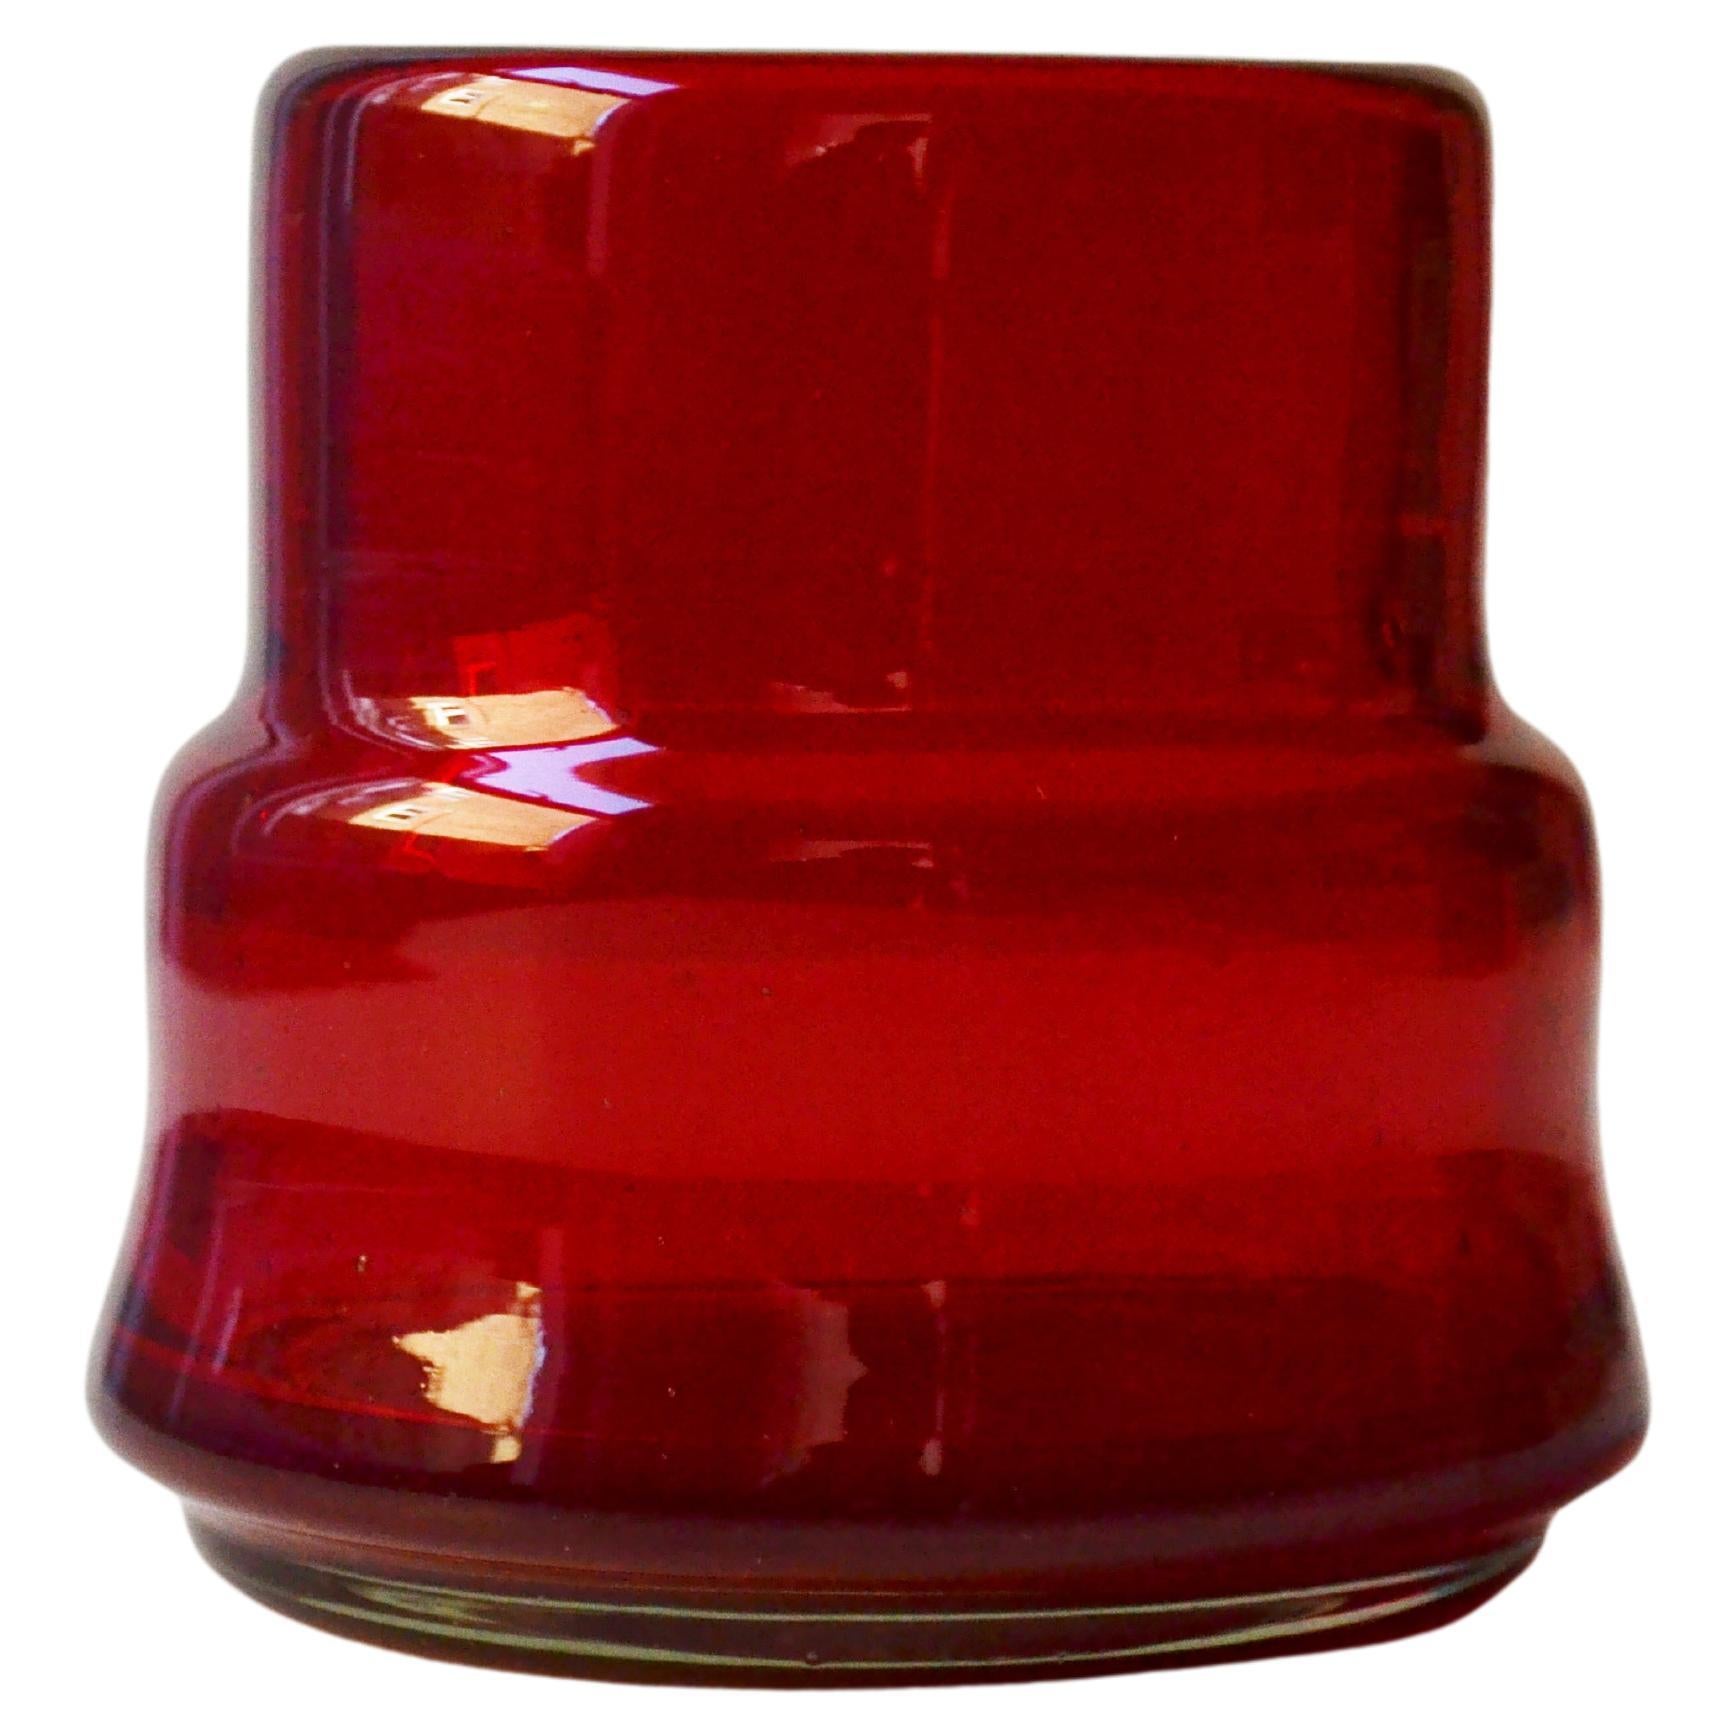 8 mundgeblasene Cocktailgläser in Rot. Inspiriert von der vorspanischen Kunst  